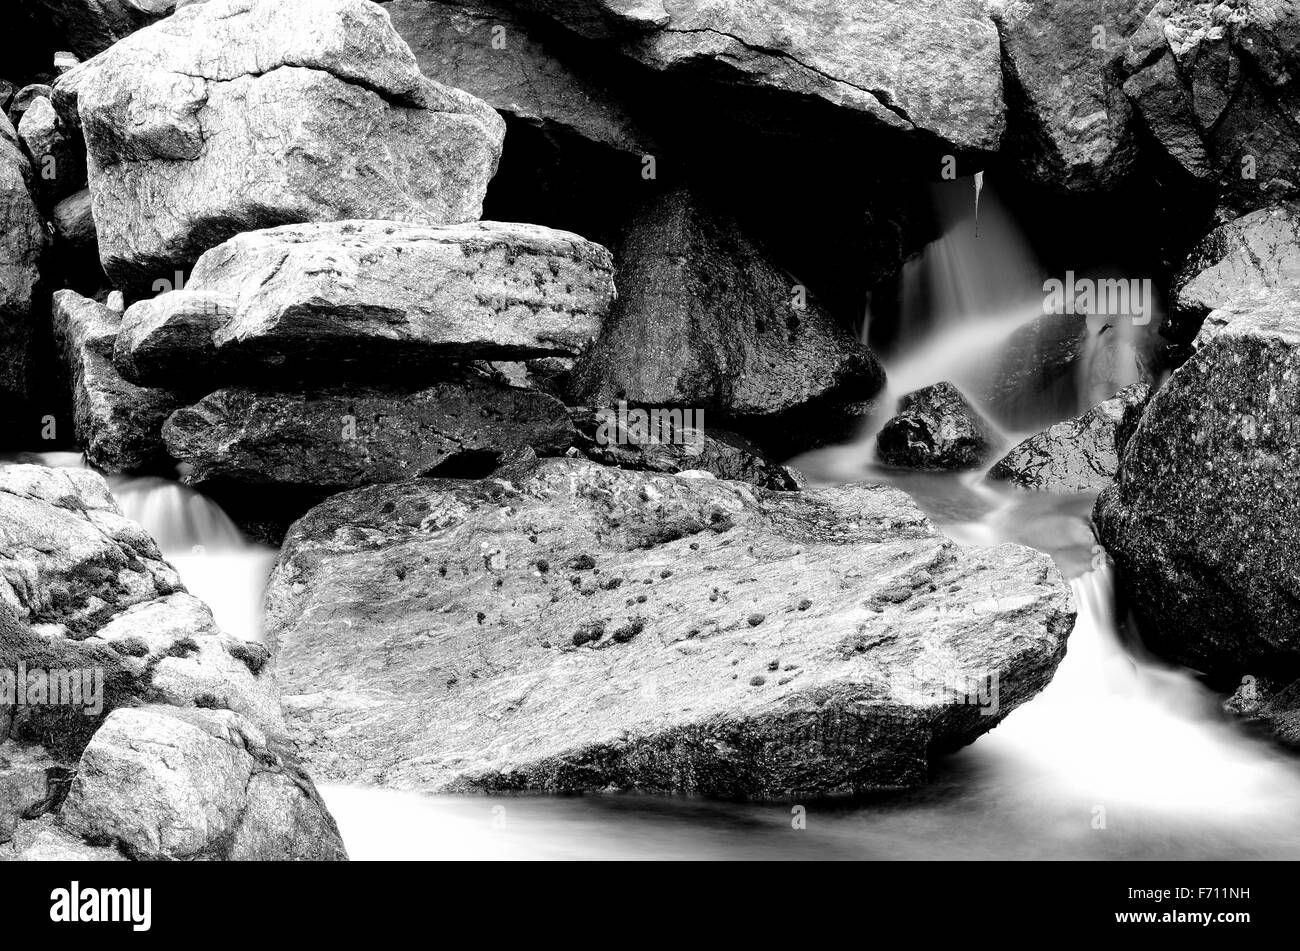 Bellissima Rocky Mountain Creek con un fresco e vivace chiara acqua fredda Foto Stock